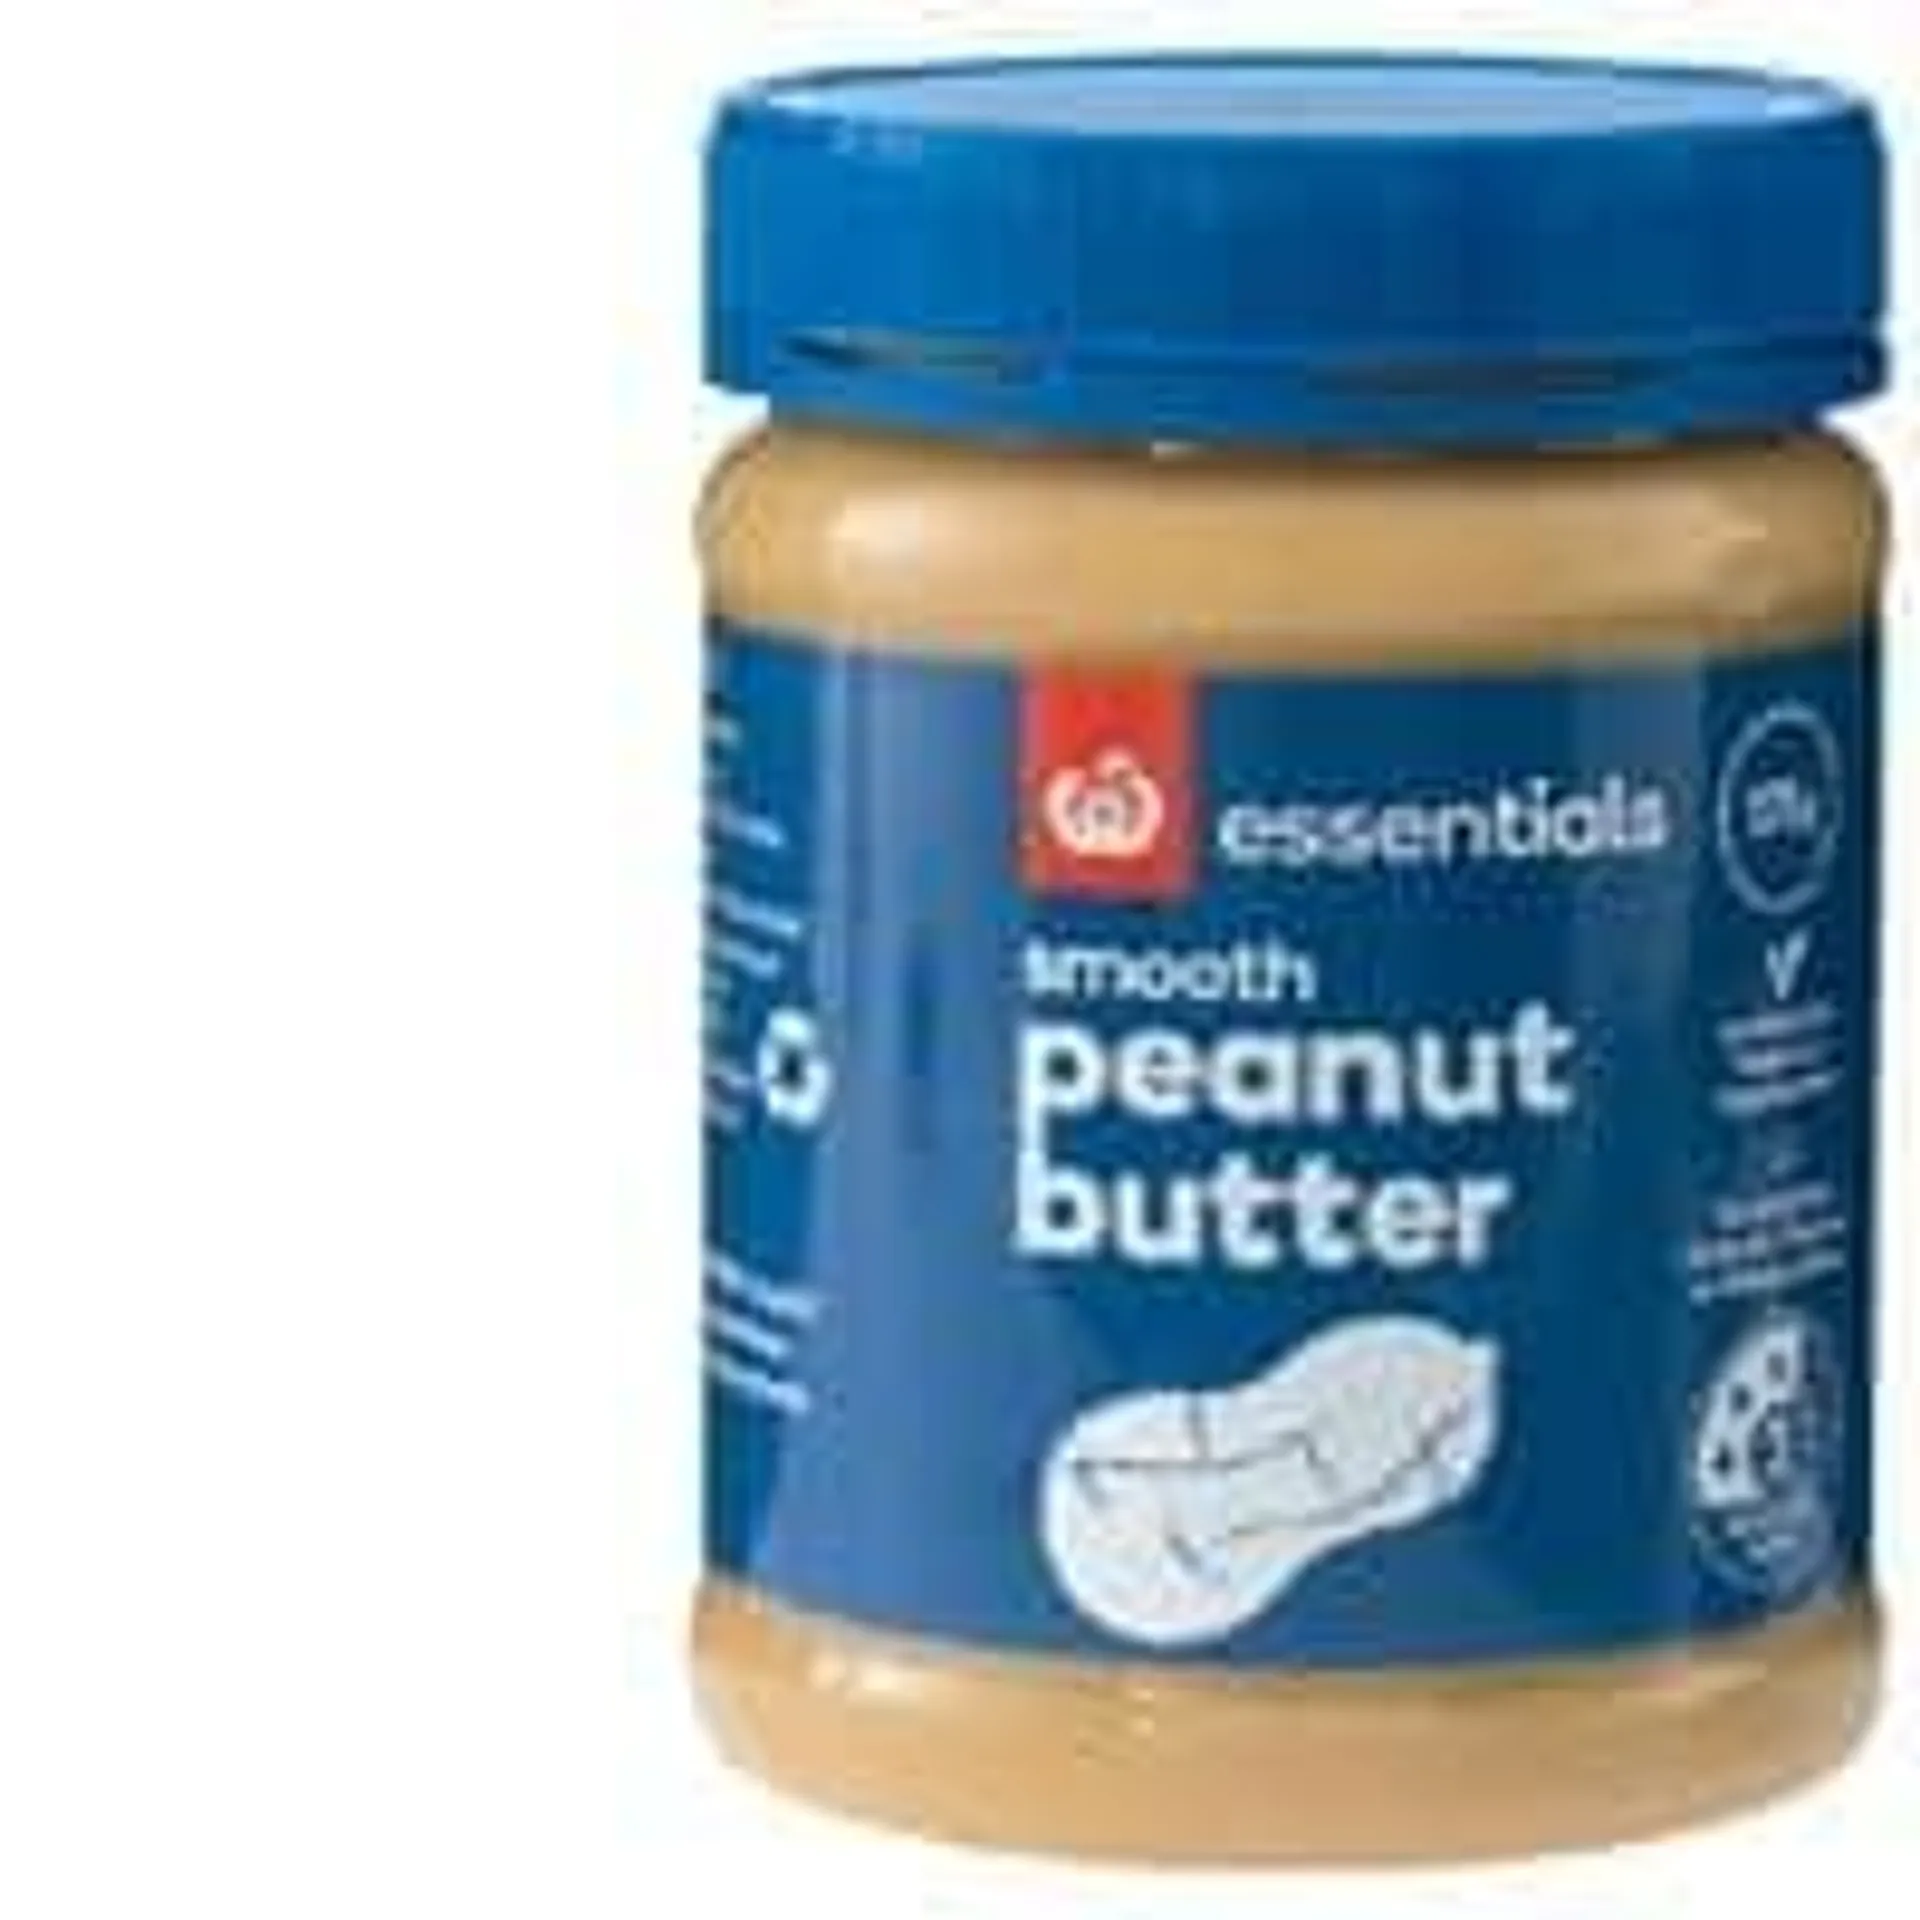 Essentials Peanut Butter Smooth